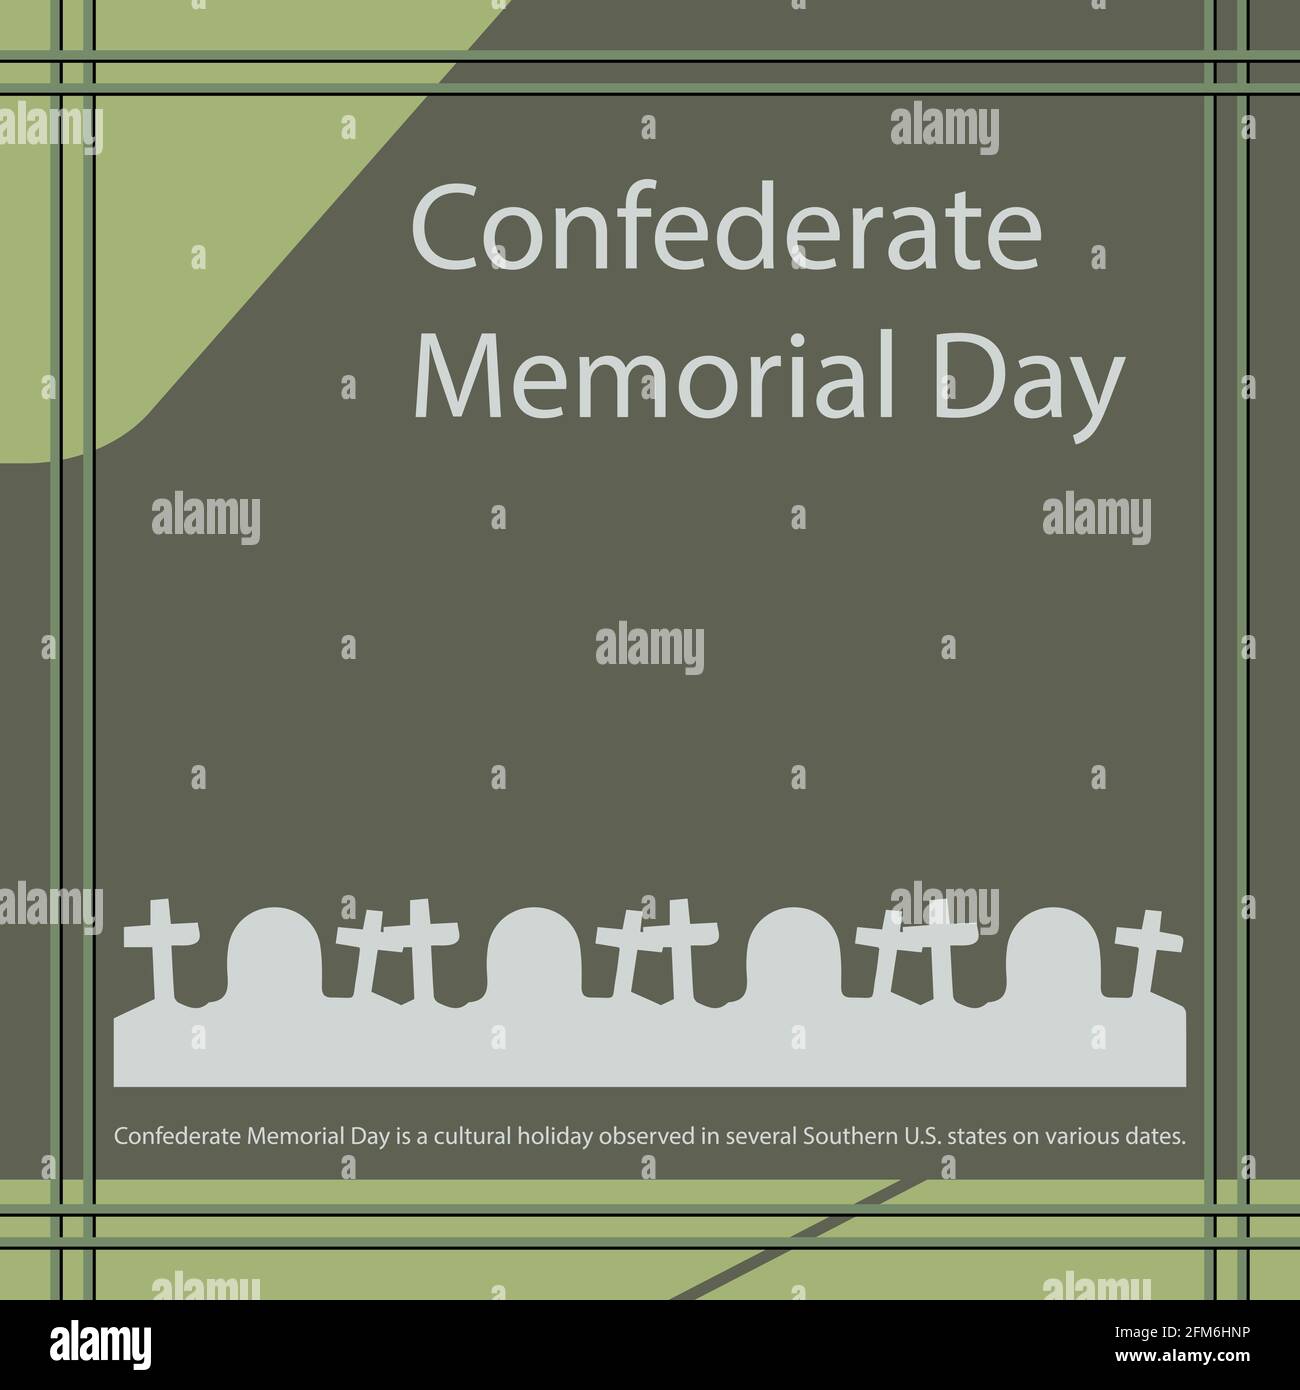 Le Confederate Memorial Day est un jour férié culturel observé dans plusieurs États du sud des États-Unis à diverses dates. Illustration de Vecteur